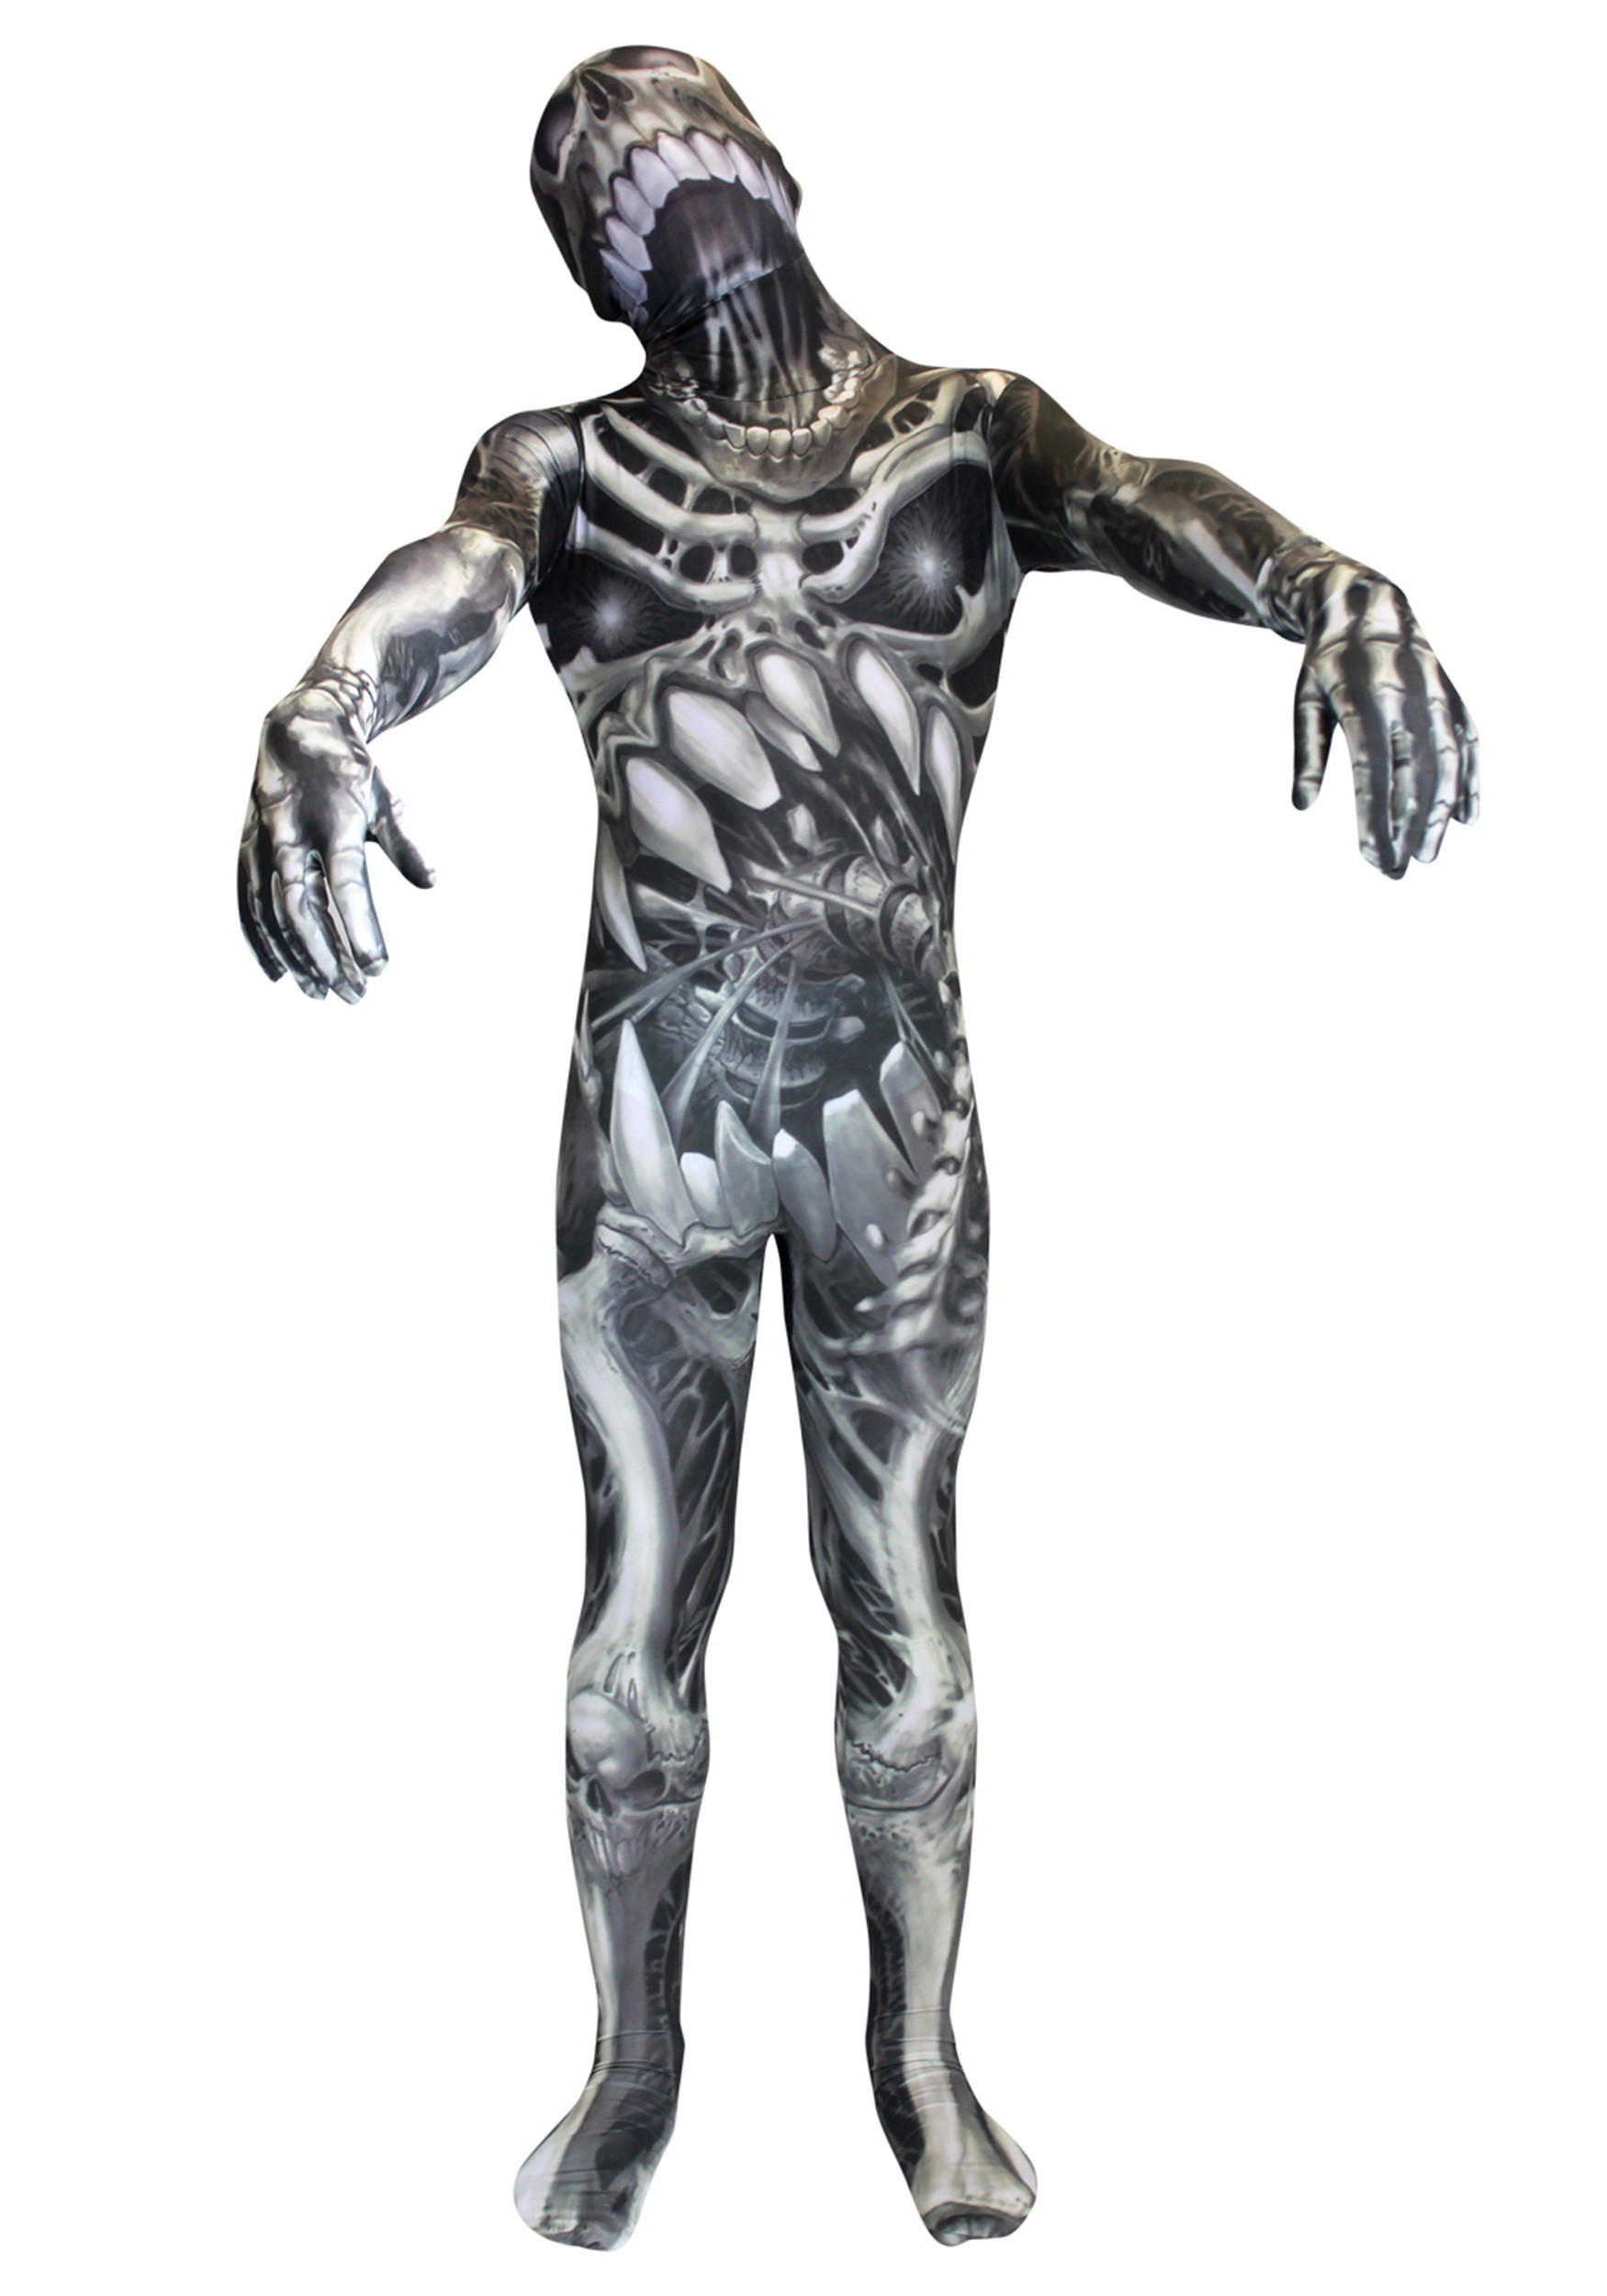 Kid’s Skull and Bones Skeleton Morphsuit Costume